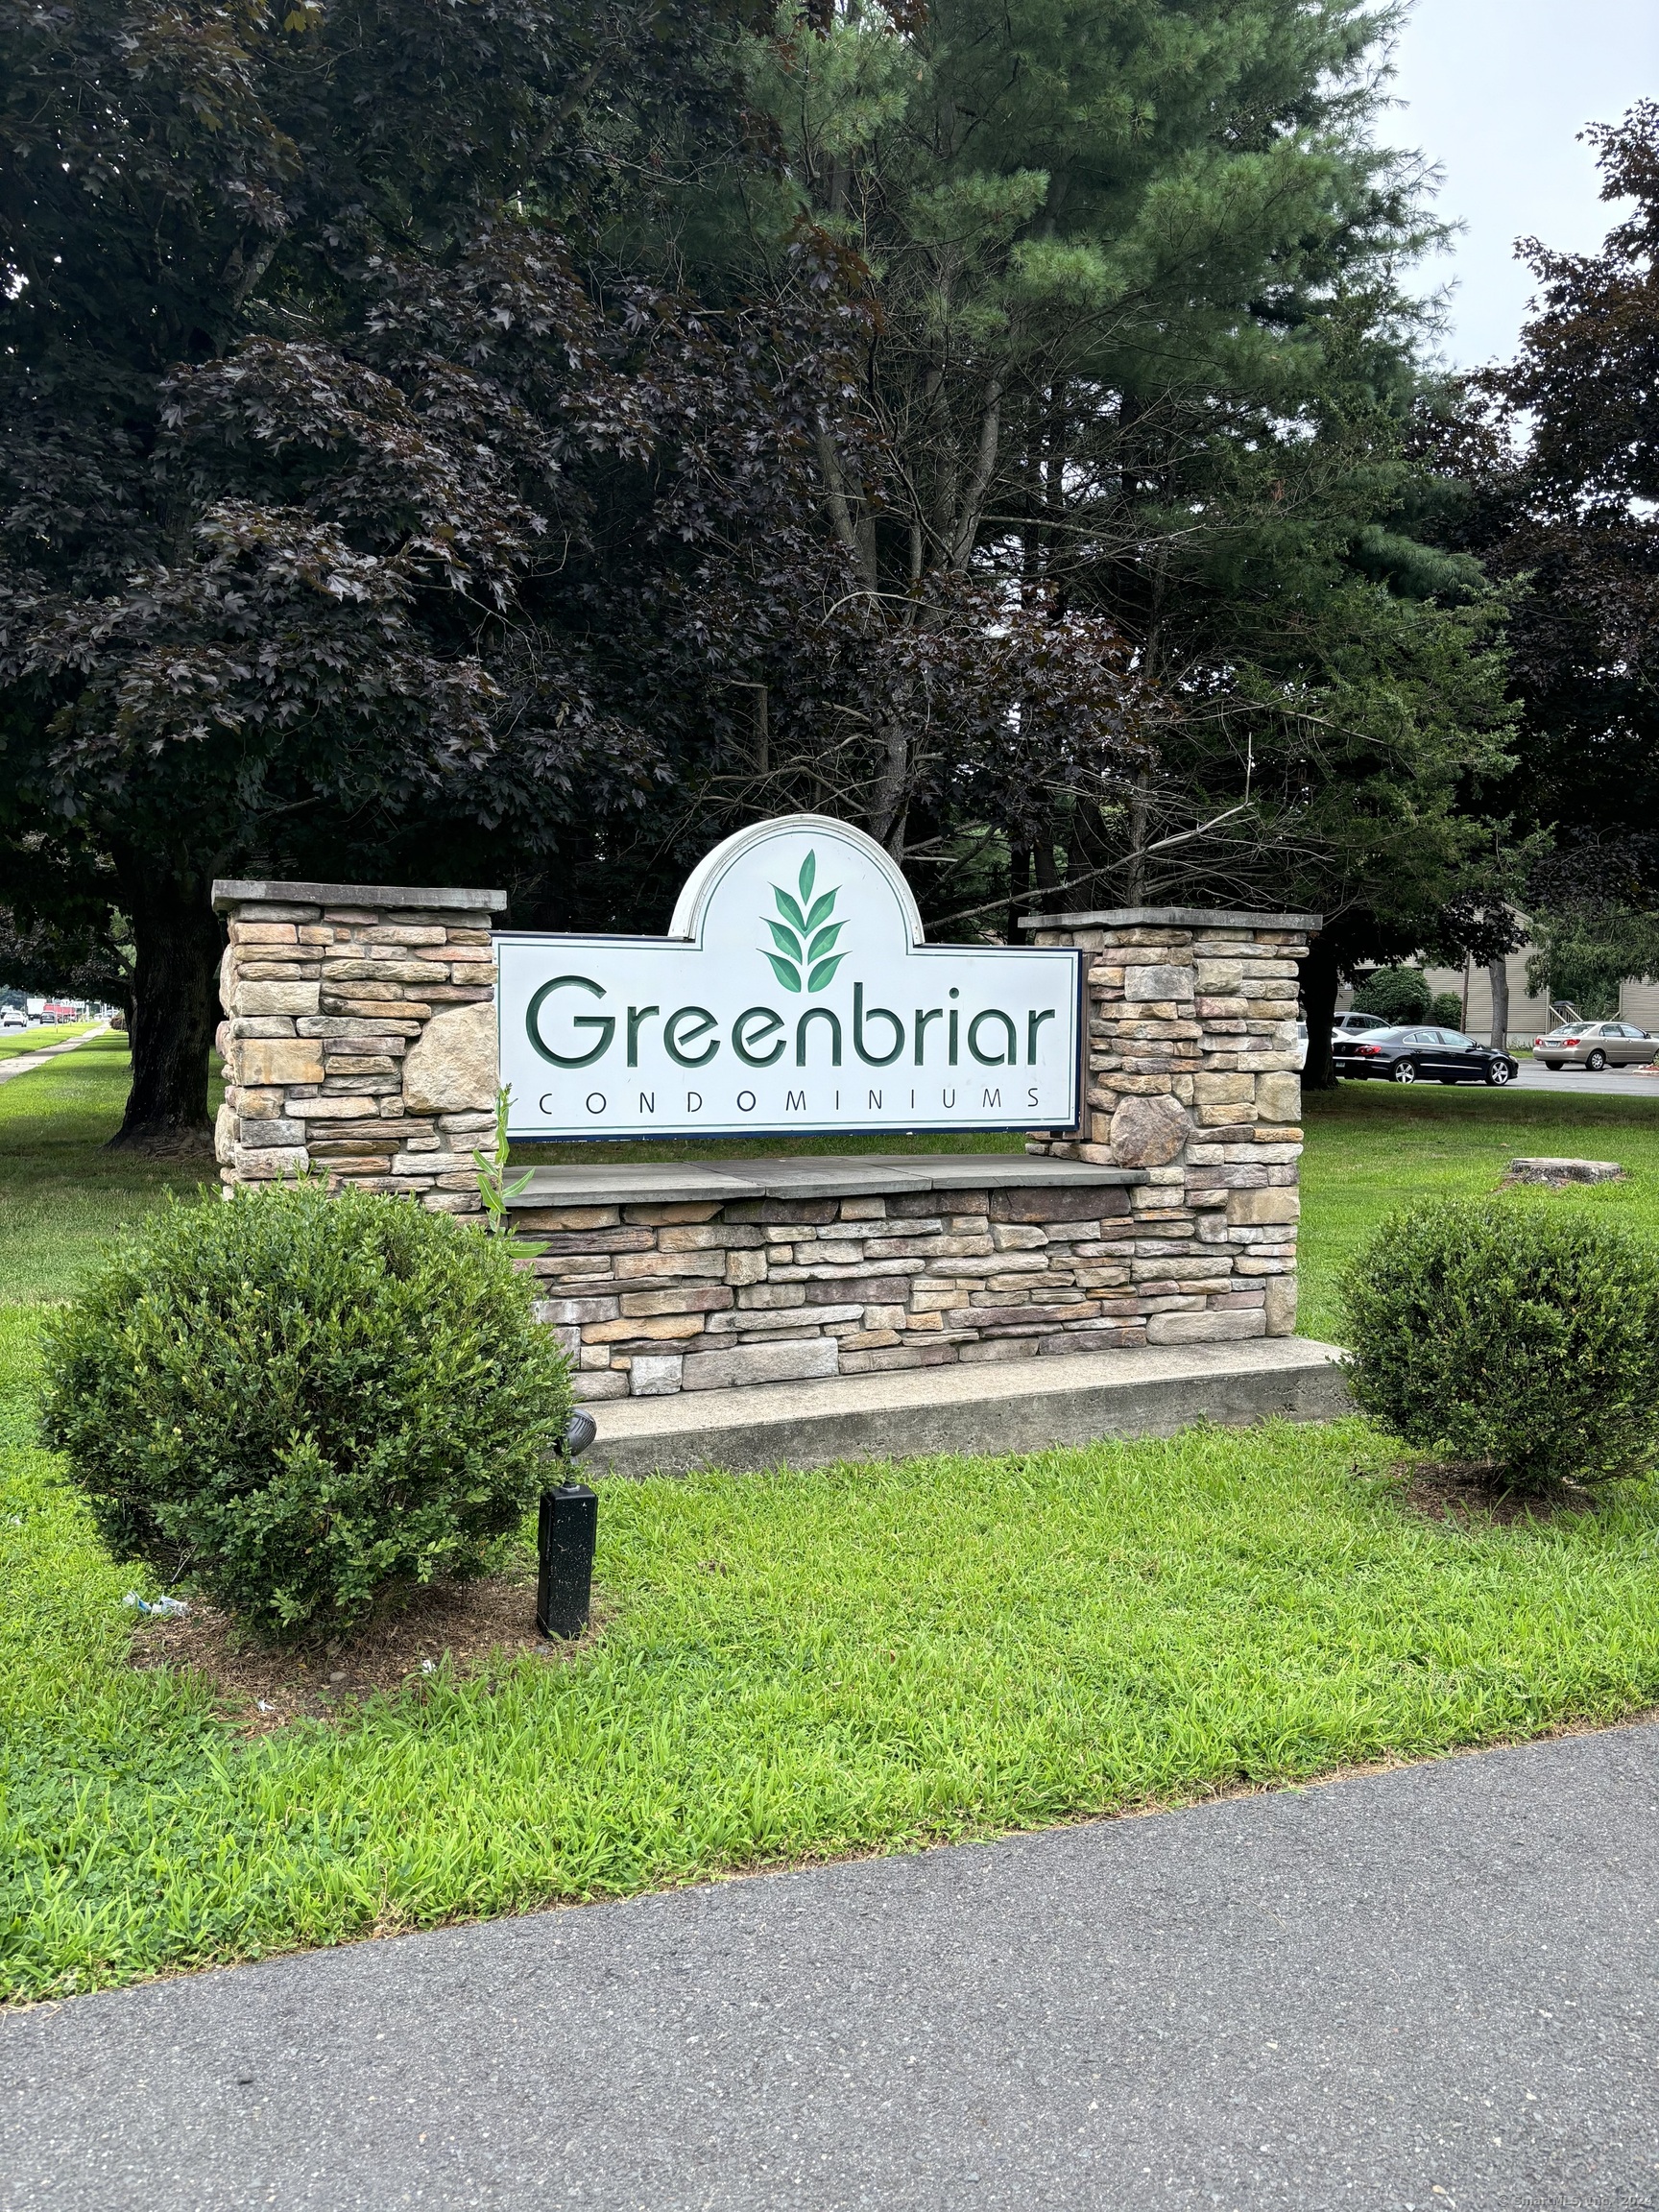 Rental Property at 20 Greenbriar Drive, Farmington, Connecticut - Bedrooms: 2 
Bathrooms: 3 
Rooms: 5  - $2,600 MO.